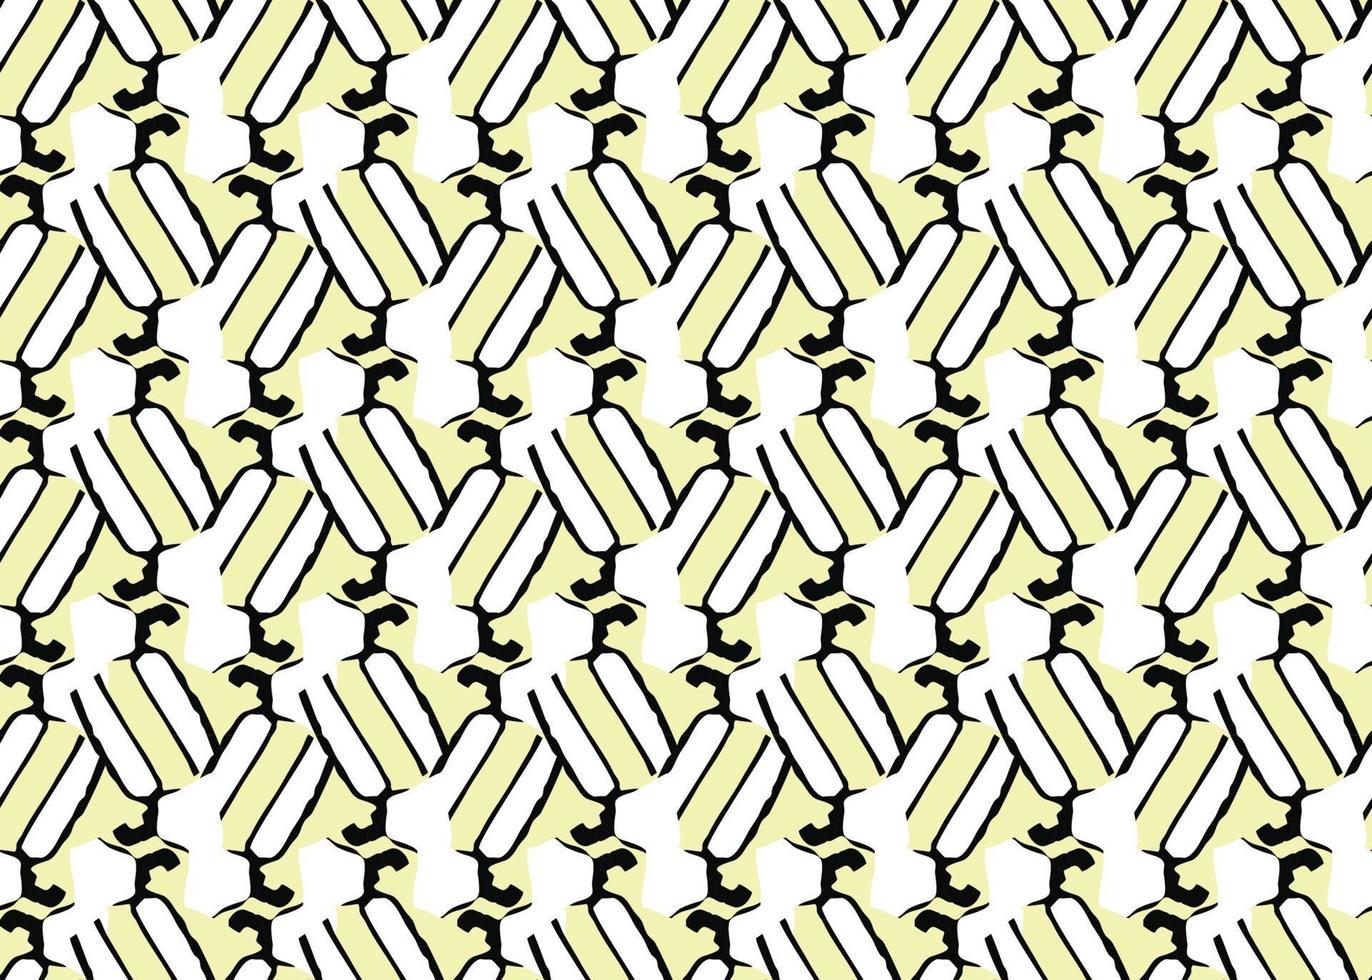 Vektor Textur Hintergrund, nahtloses Muster. handgezeichnete, gelbe, schwarze, weiße Farben.